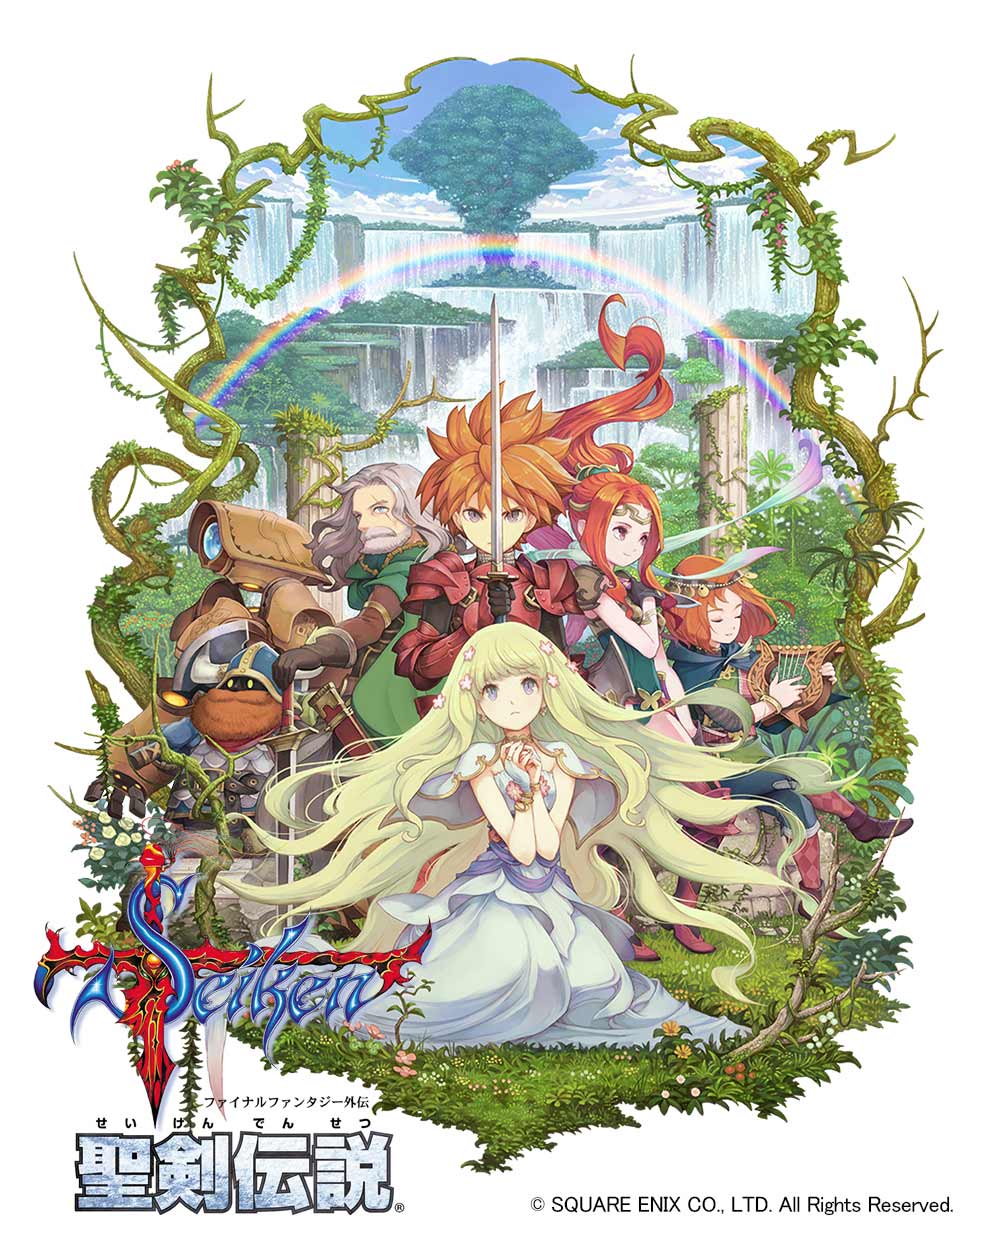 スクエニ 聖剣伝説 ファイナルファンタジー外伝 配信日が2月4日に決定 サウンドトラックも3月30日に発売 Gamebiz